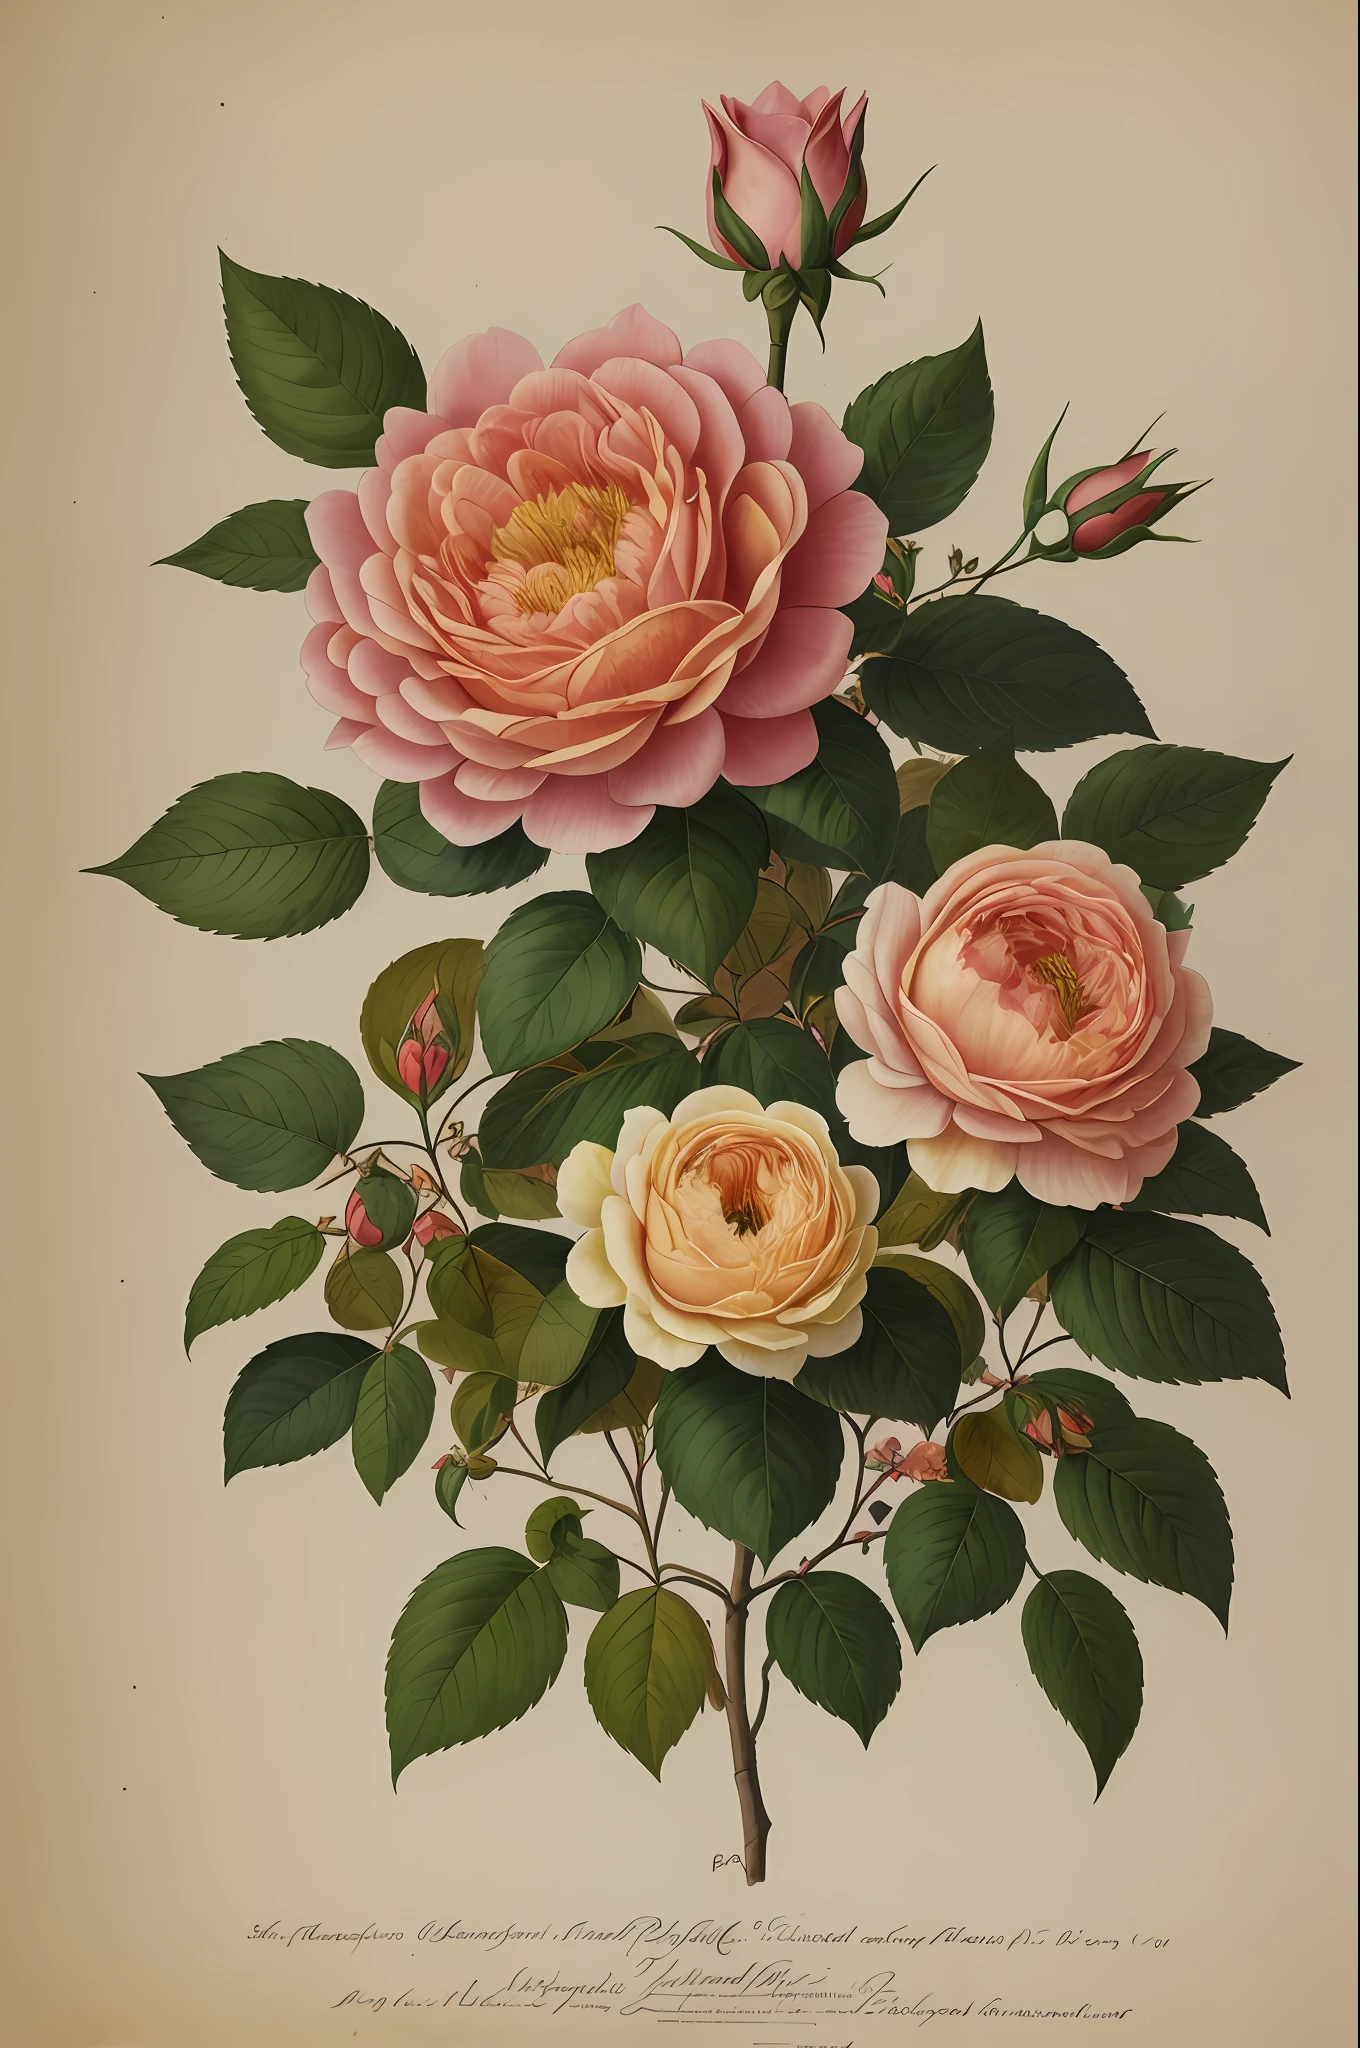 (mejor calidad:1.2), (detallado:1.2), (obra maestra:1.2), ilustraciones botánicas antiguas de la rosa provenzal más grande (1770 1775) en alta resolución por John Edwards